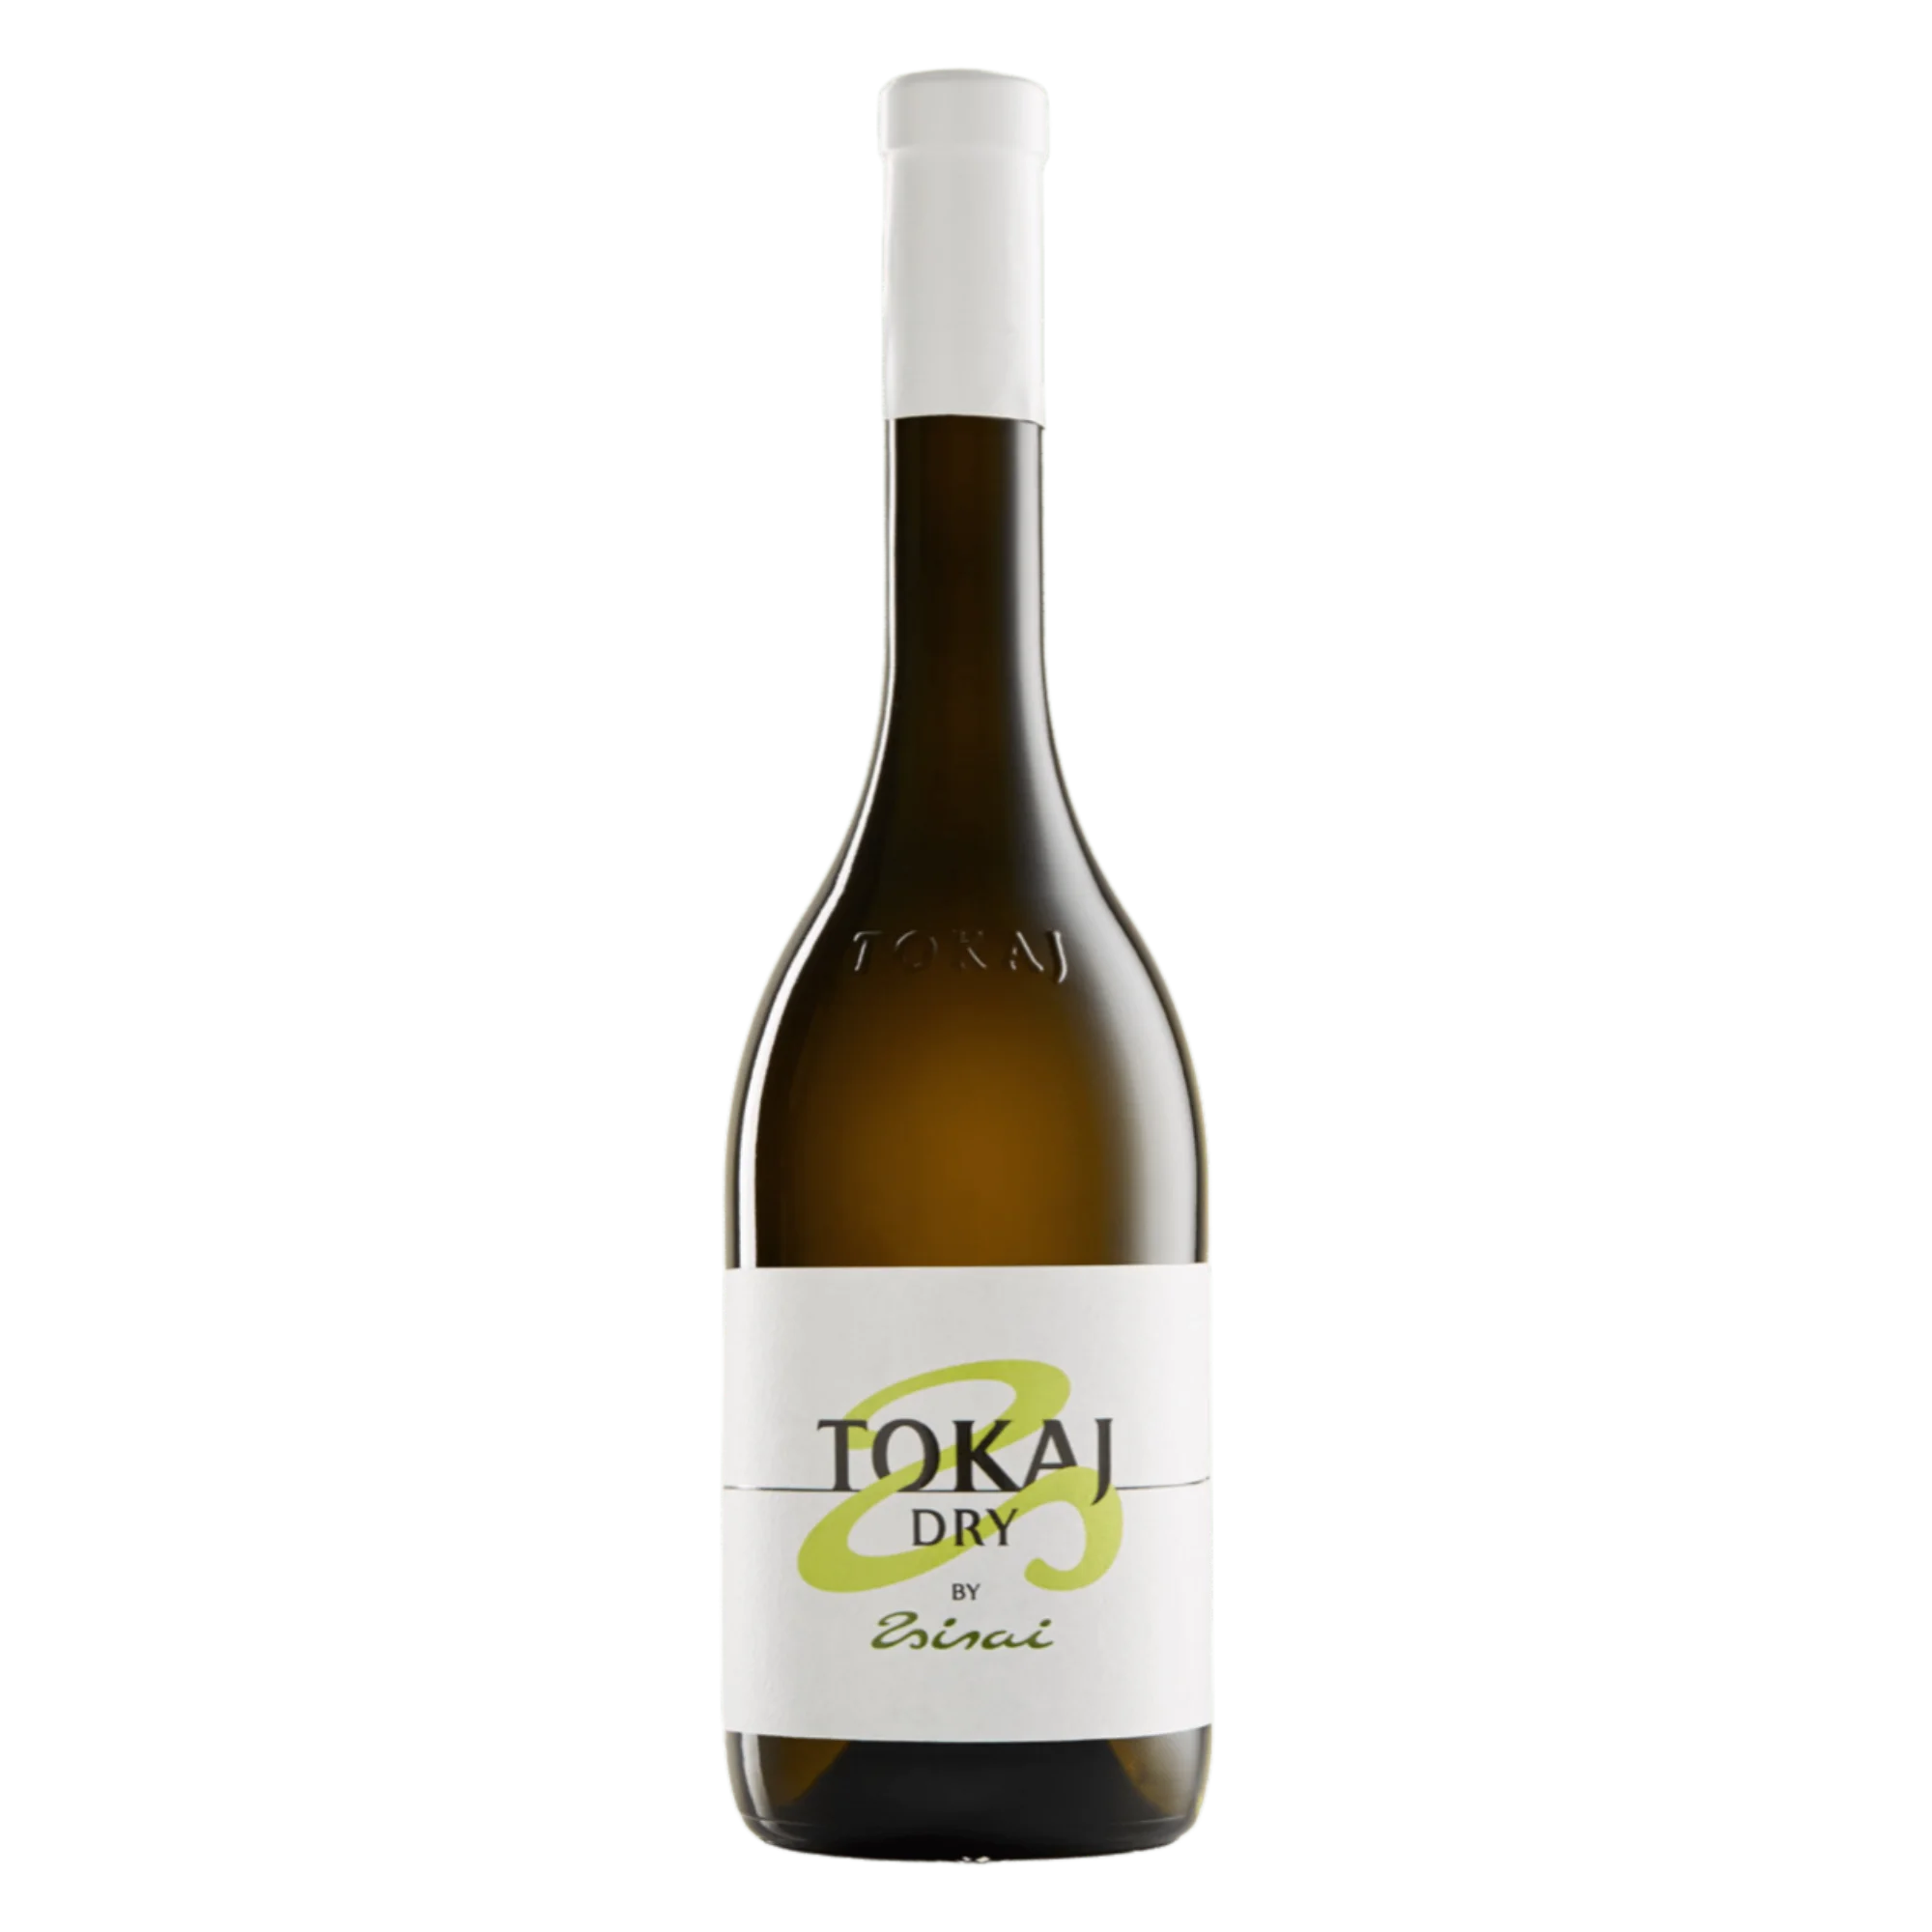 Tokaj Dry by Zsirai 2018 - Weißwein trocken aus Ungarn